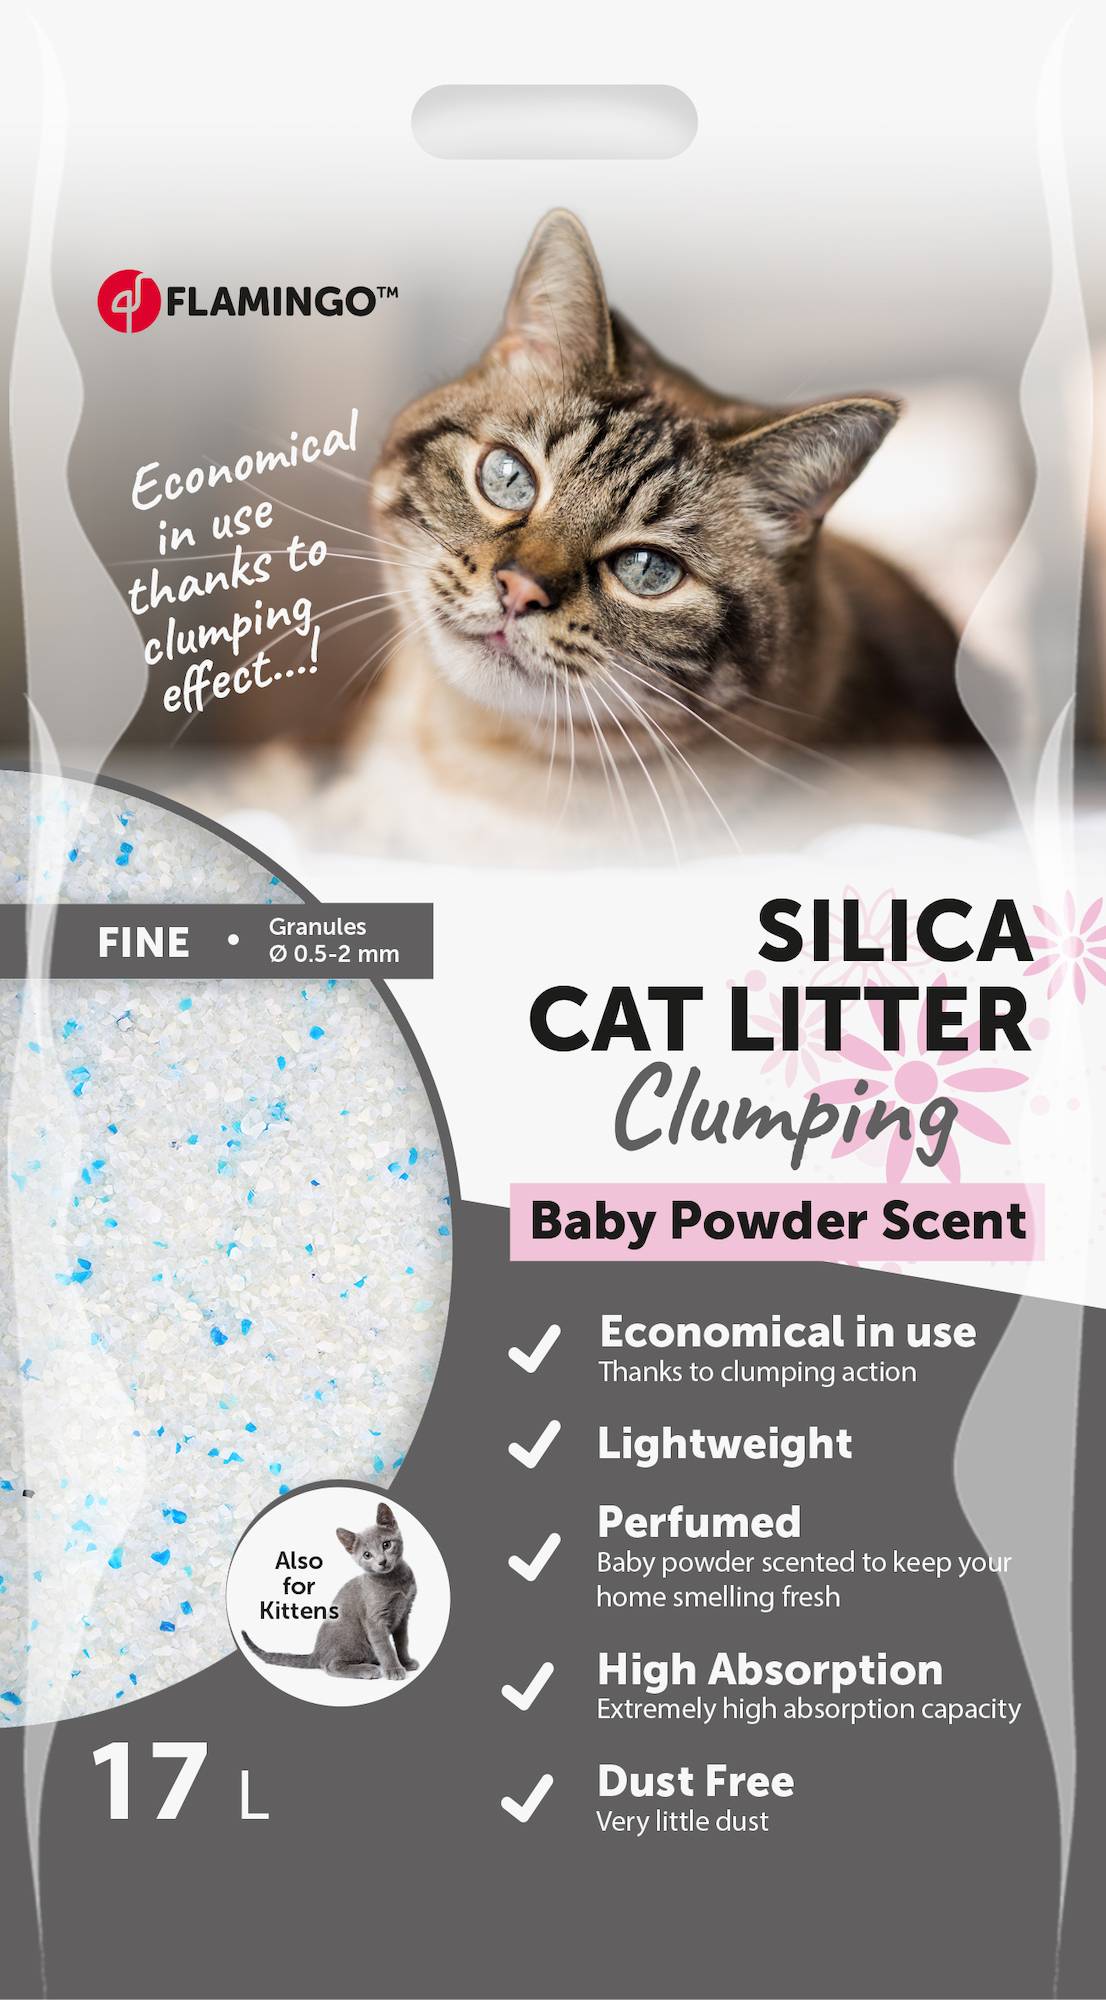 Silica kattenbakvulling verrijkt met babypoeder